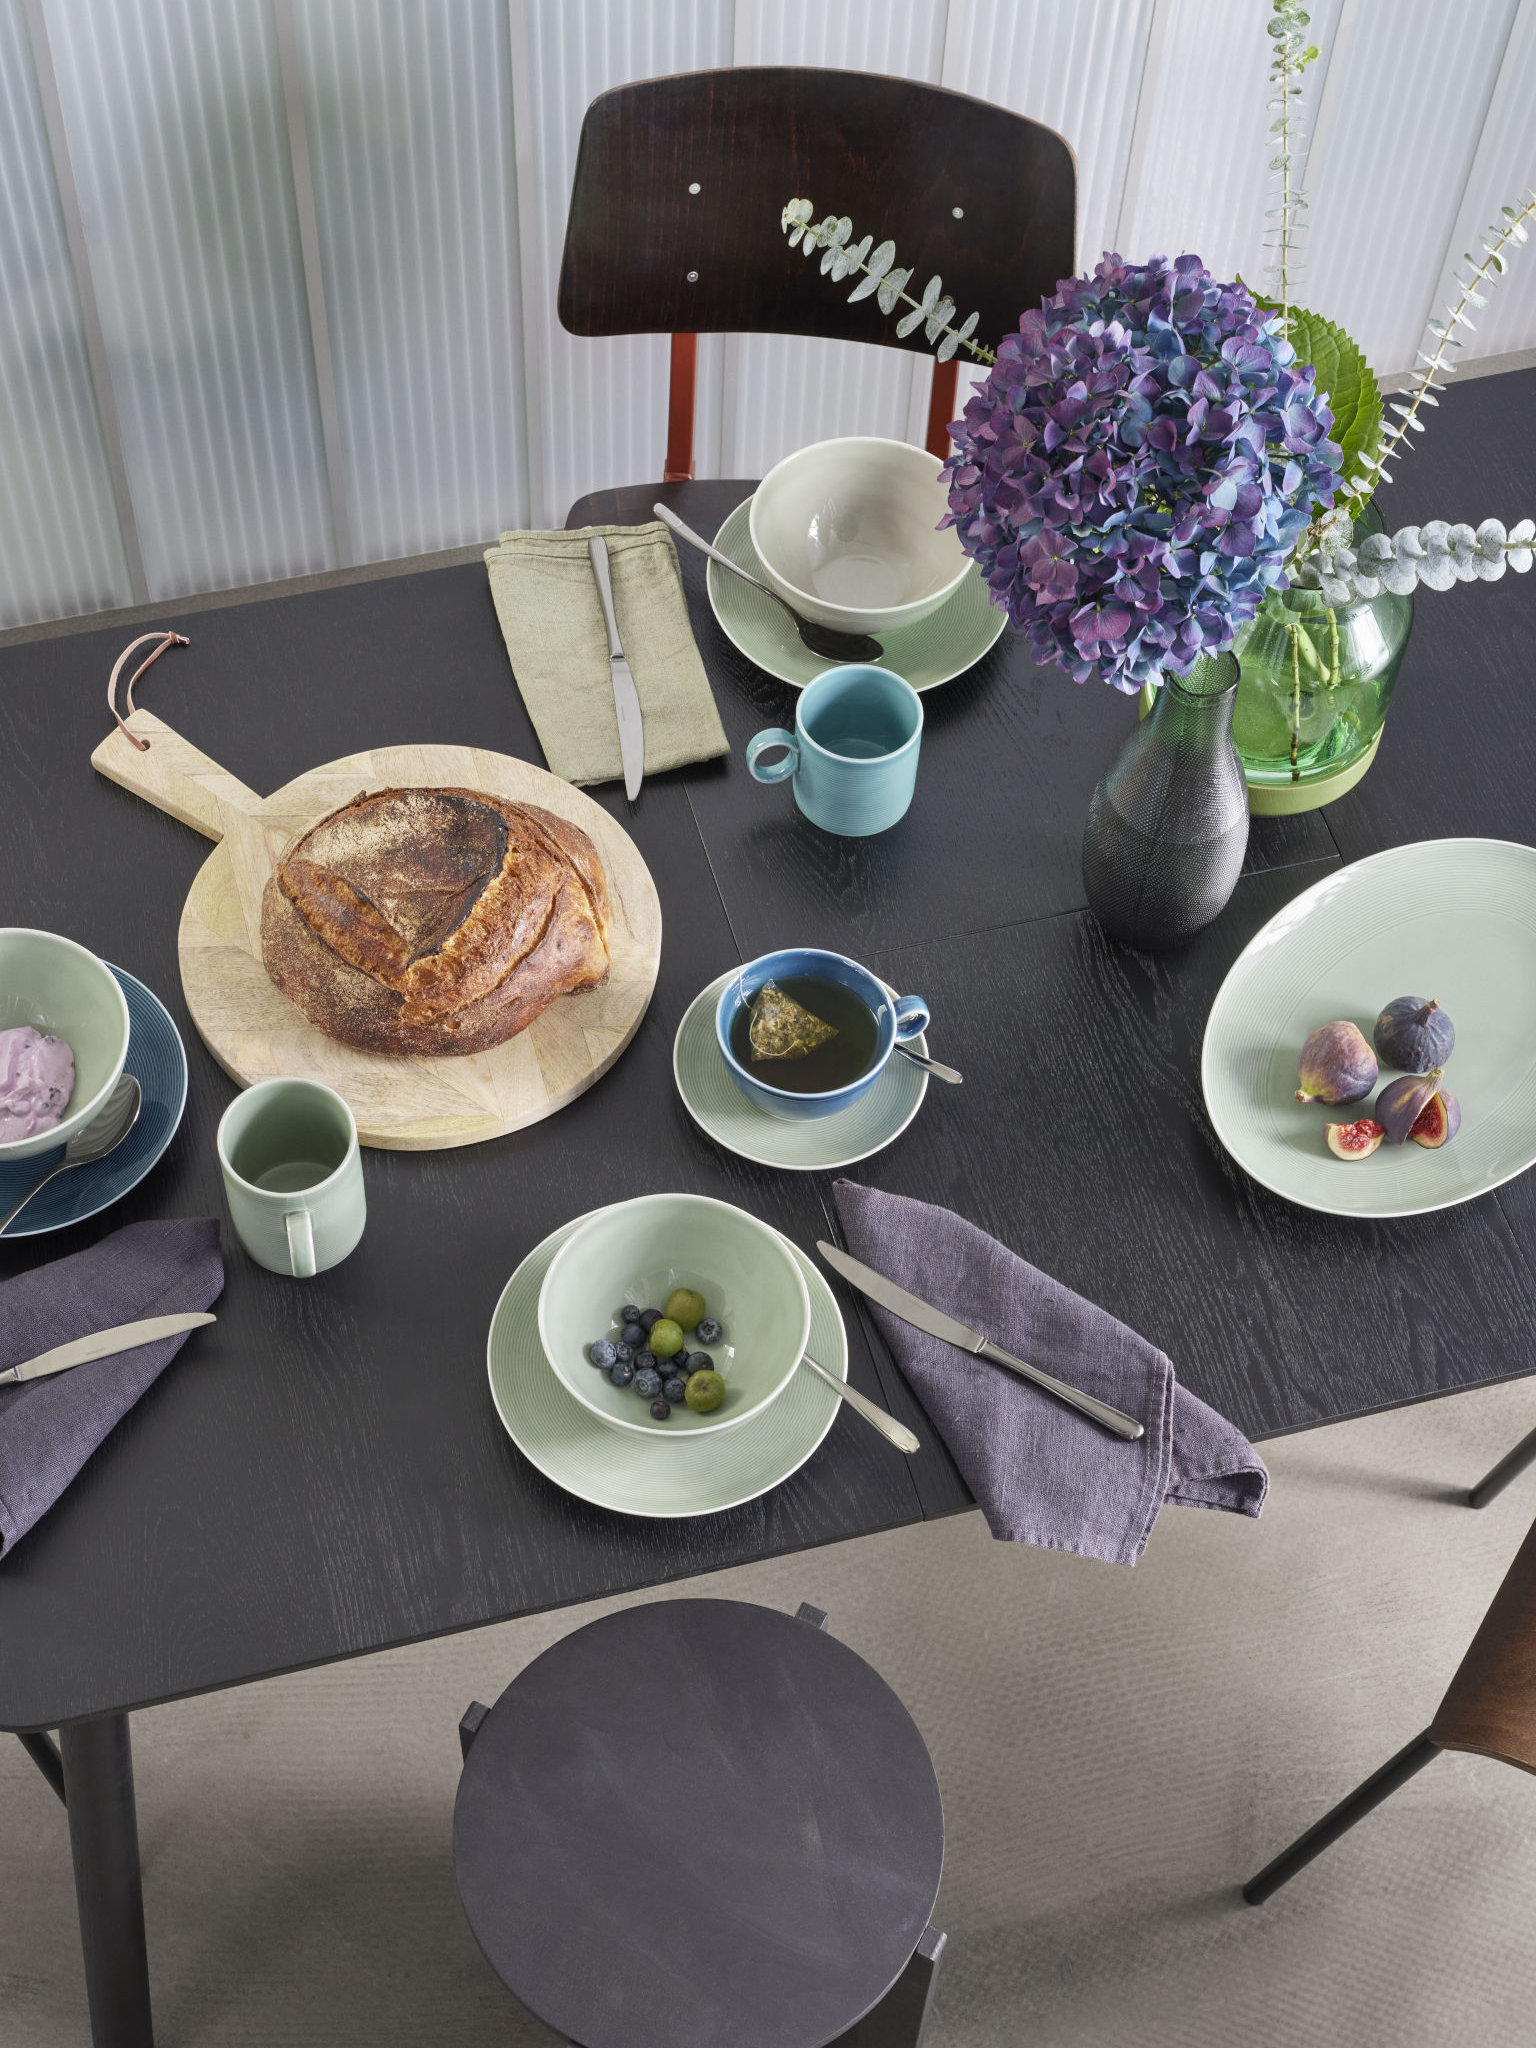 Thomas Loft Moss green Geschirr gedeckt auf dunklem Tisch mit Brot und Bilumen dekoriert